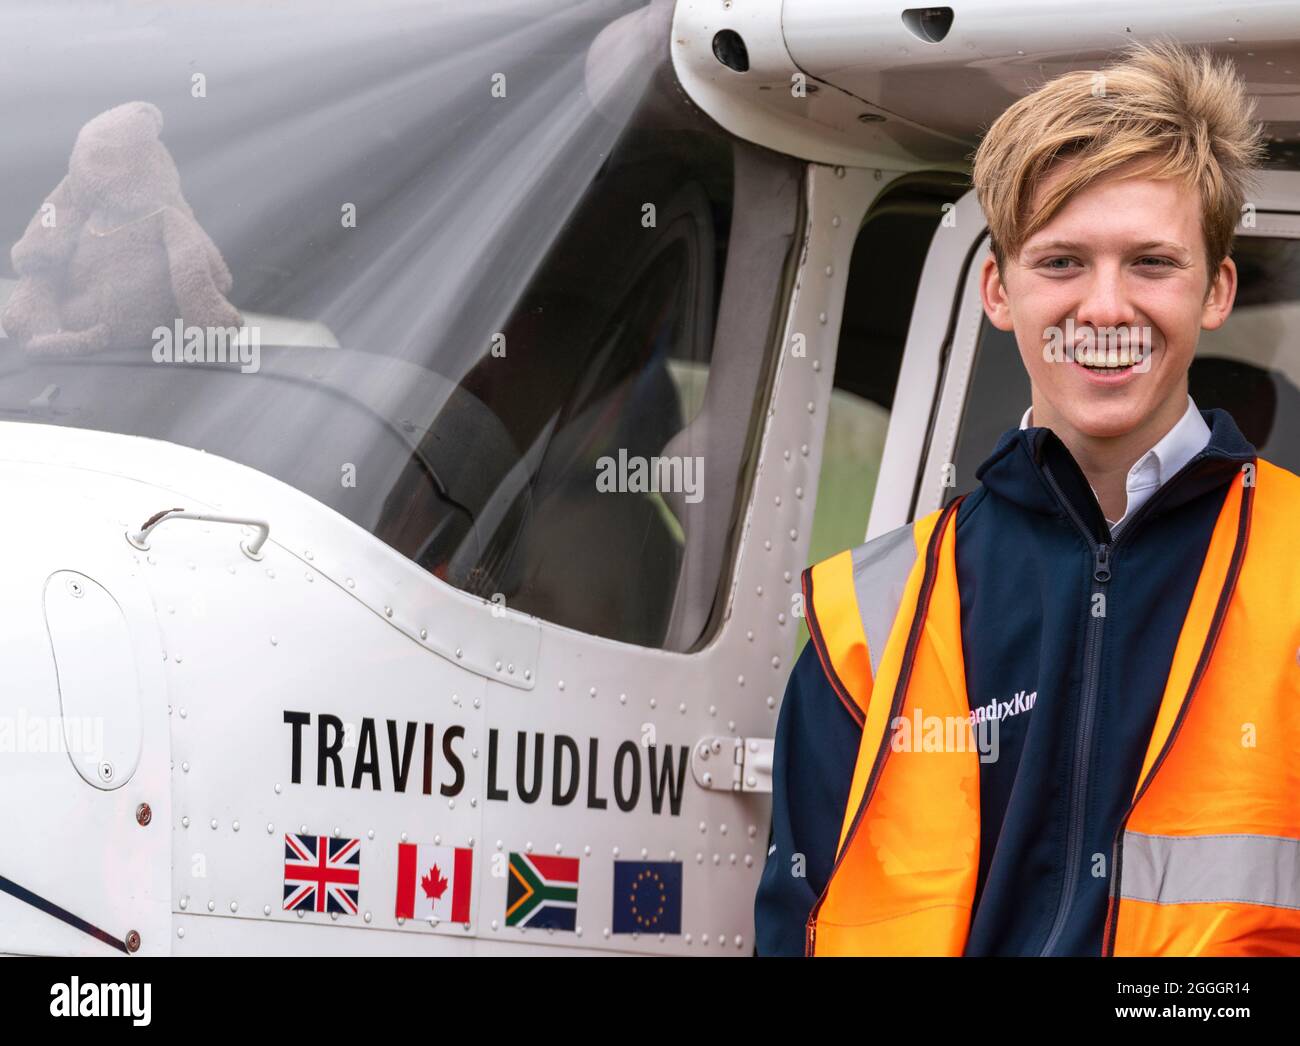 Travis Ludlow, jeune pilote, au spectacle aérien de Little Gransden pour la BBC Children in Need Charity. Le plus jeune pilote à voler en solo dans le monde, avec l'avion Banque D'Images